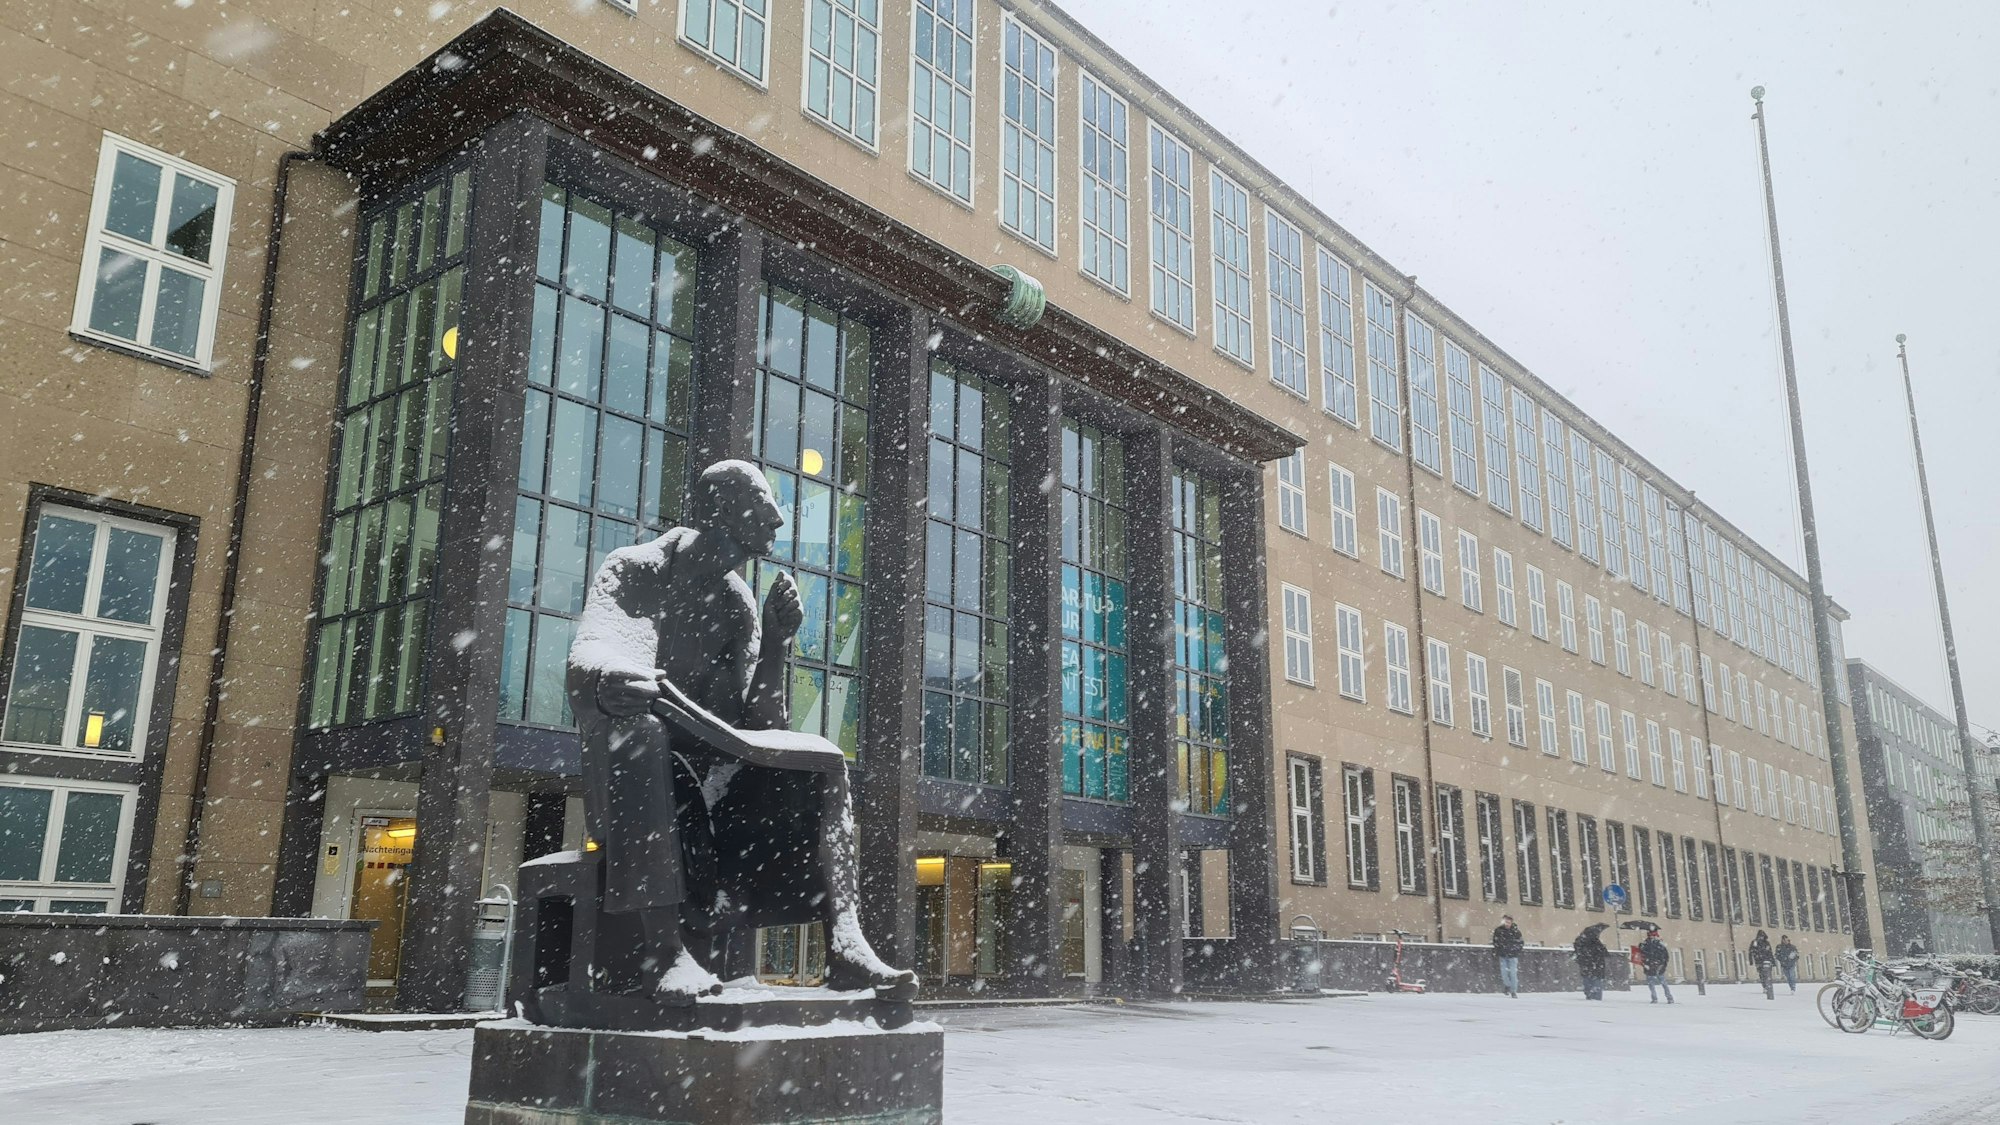 Schnee an einem Platz mit einer Statue und einem Gebäude